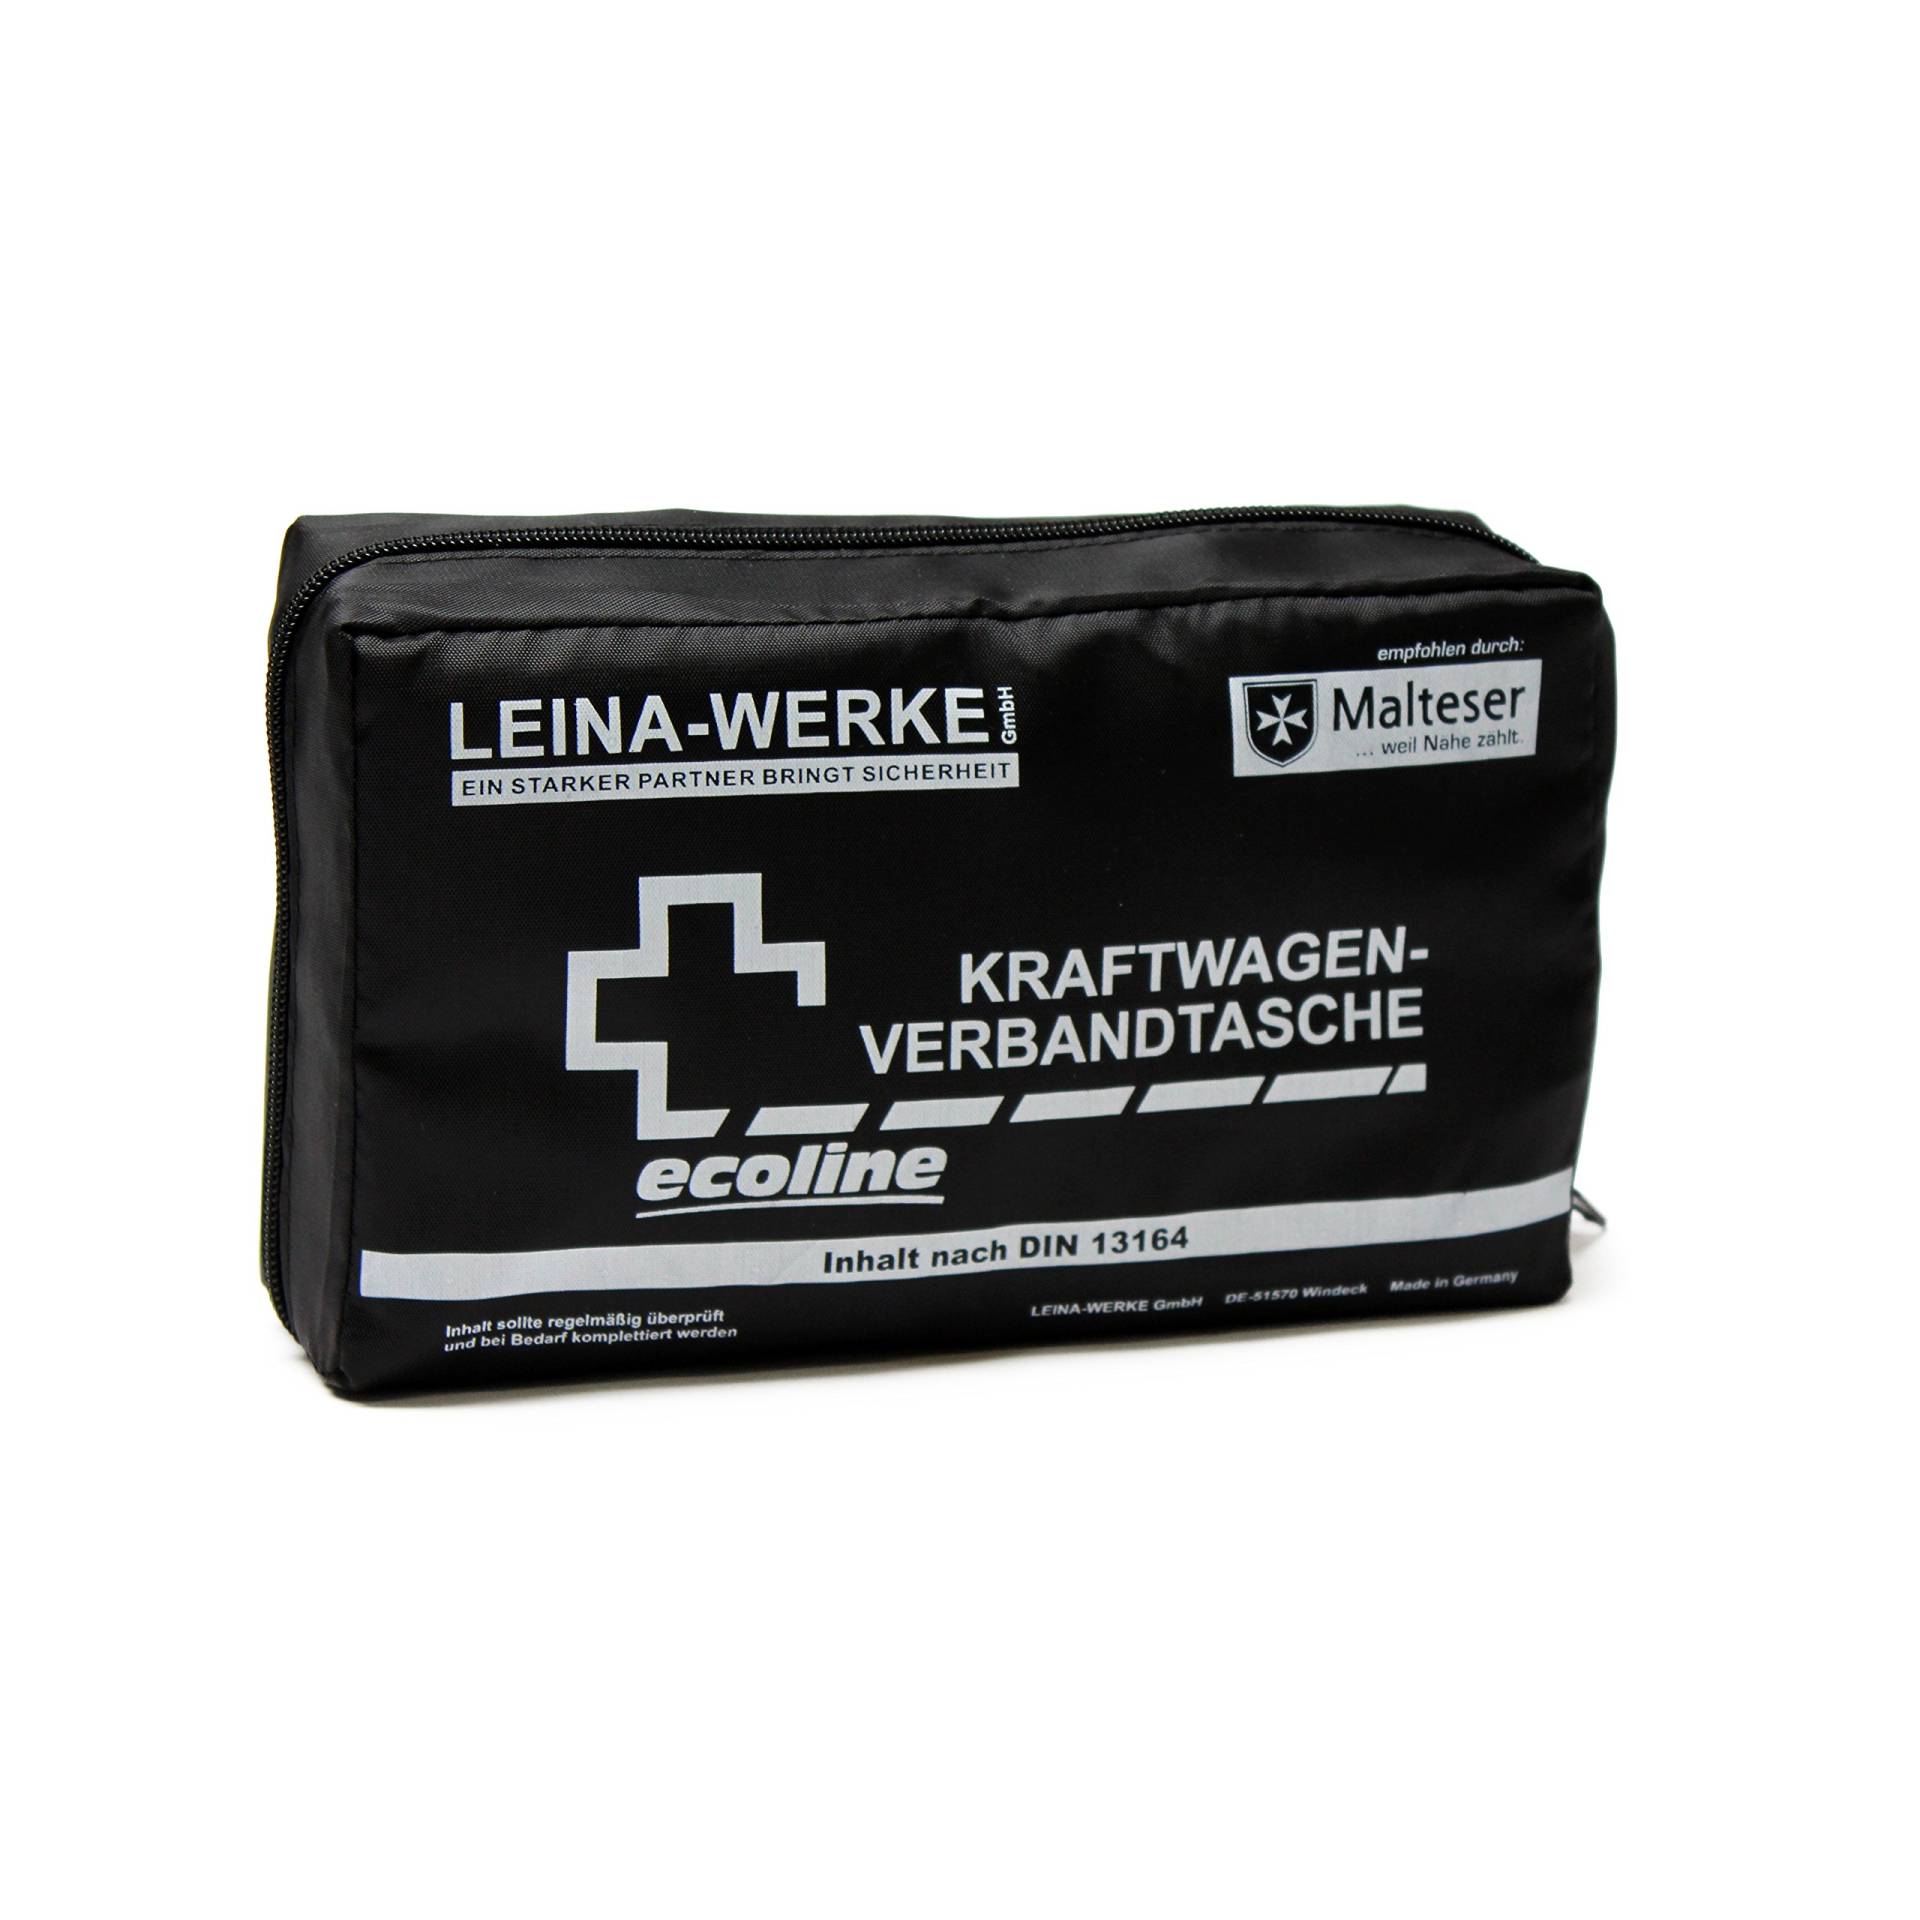 Leina Werke 11038 KFZ-Verbandtasche Compact Ecoline mit Klett, Schwarz/Weiß, White print von LEINA-WERKE